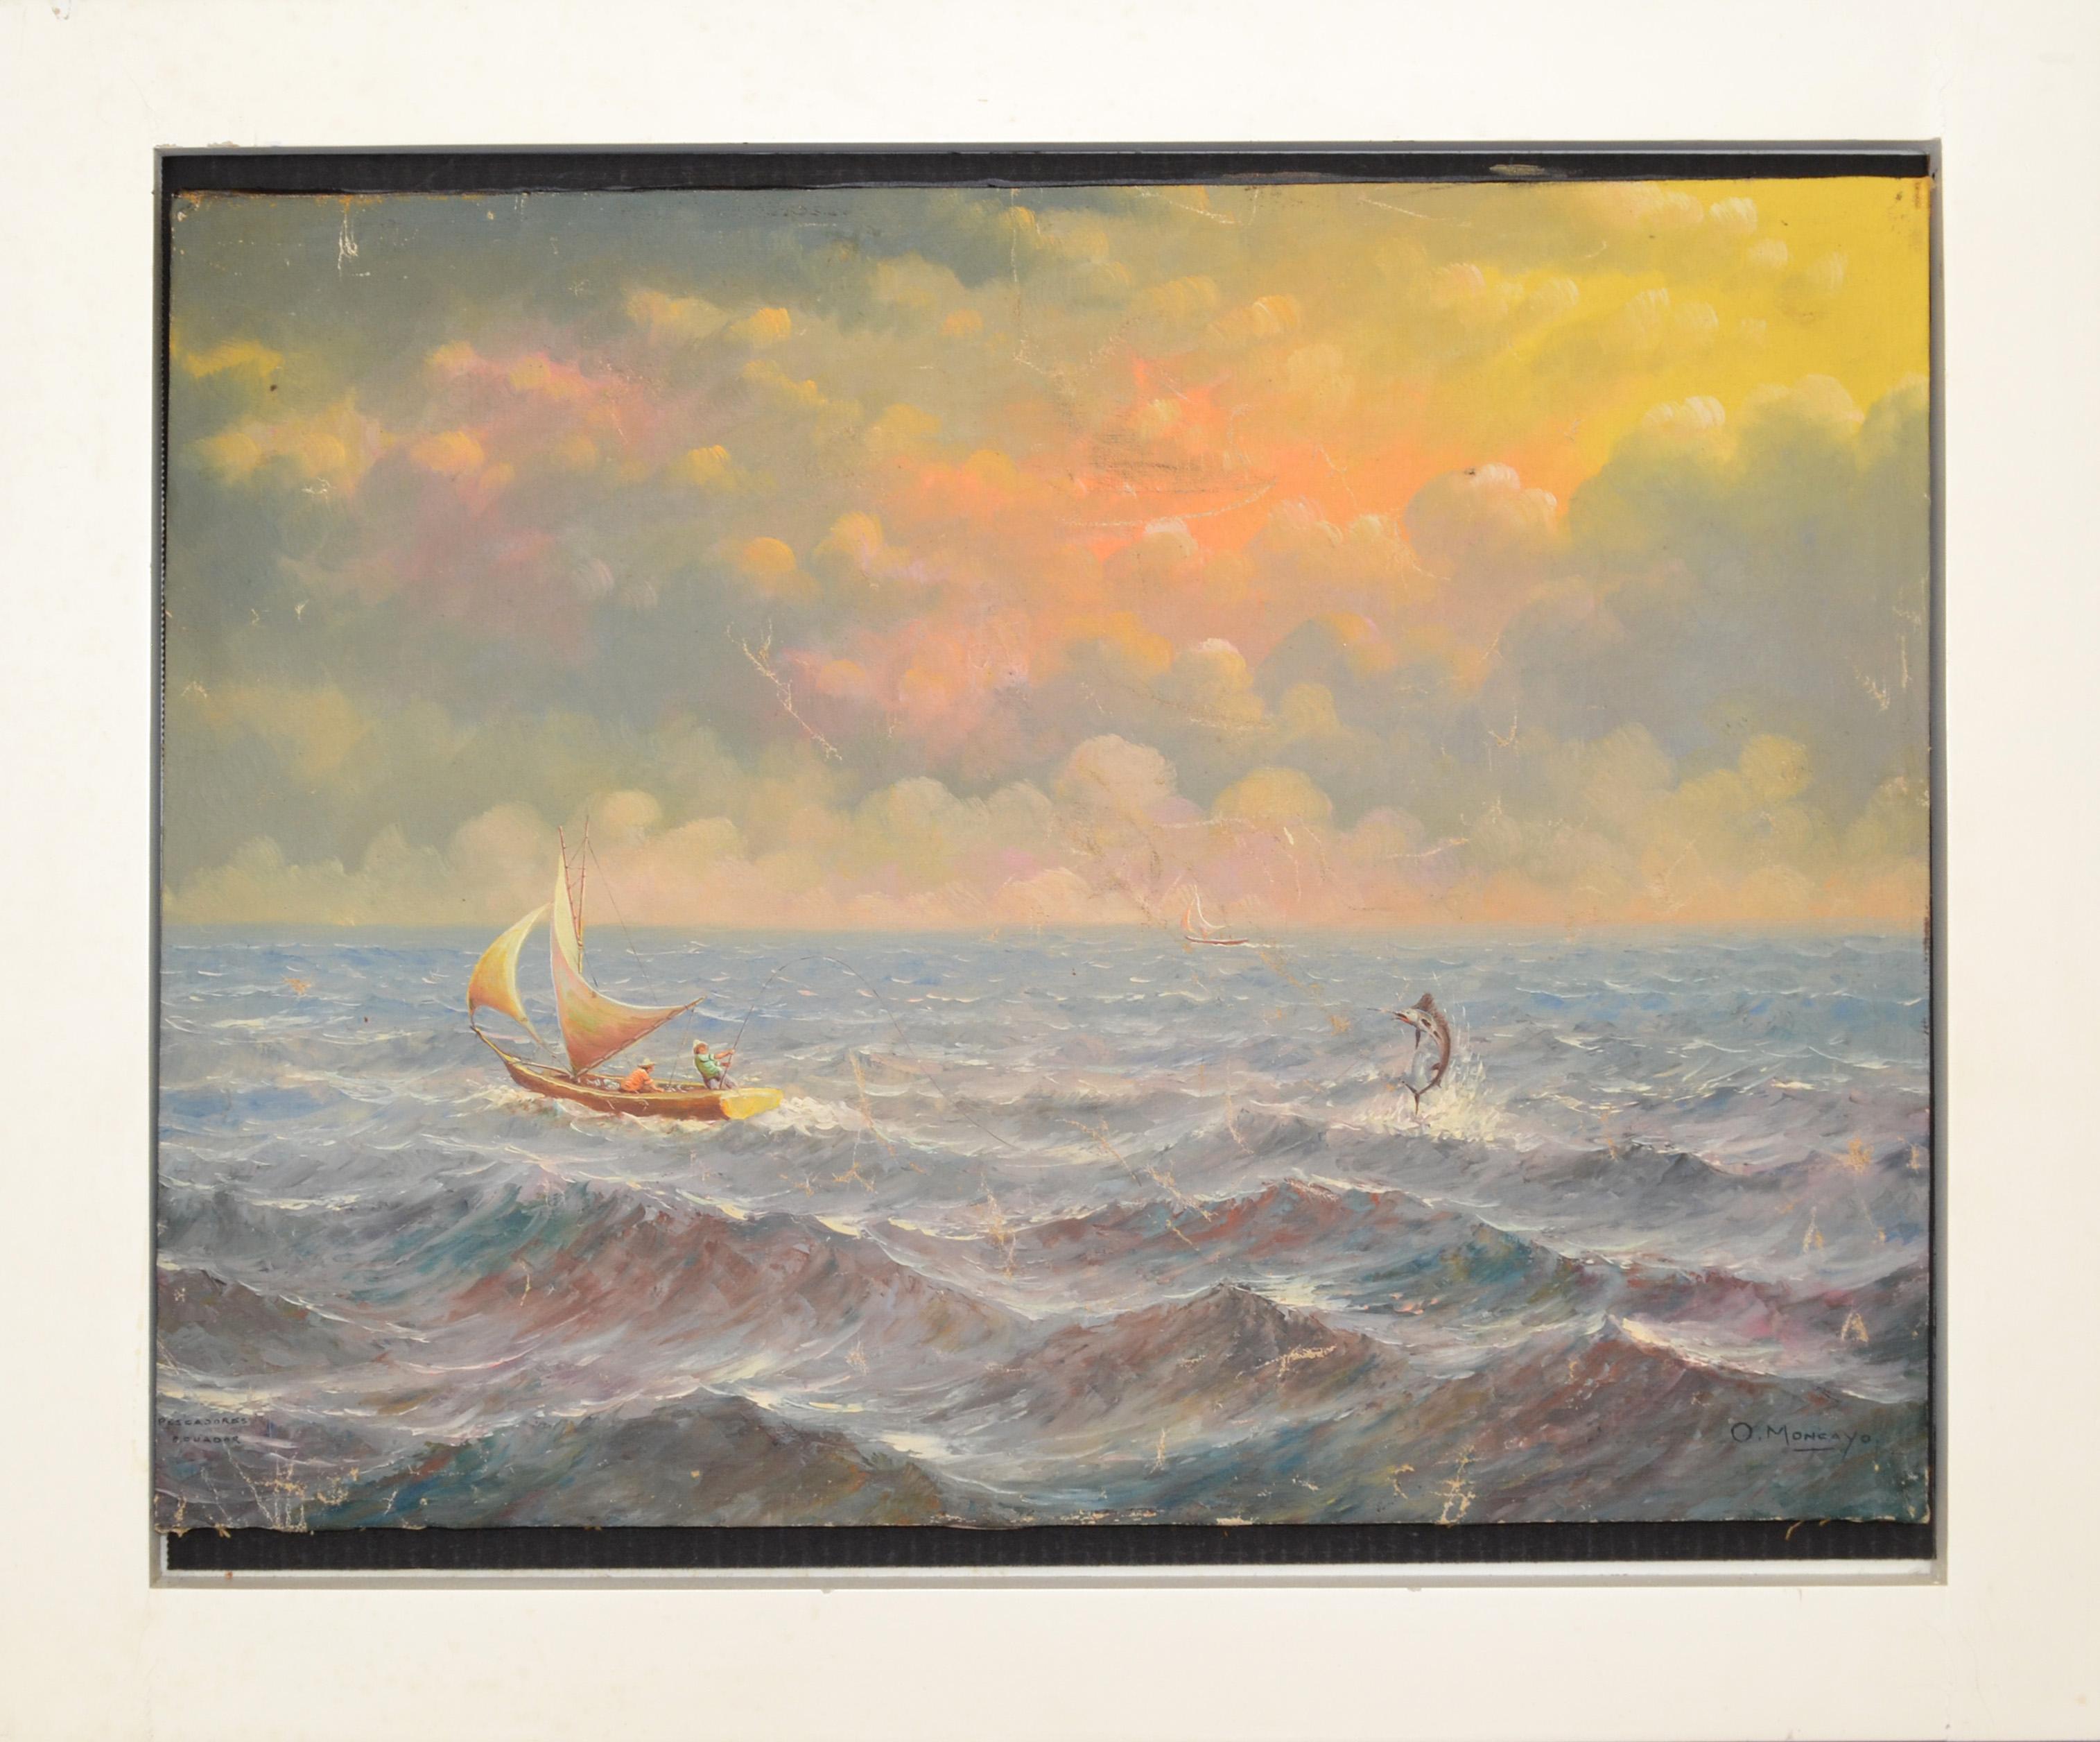 Peinture acrylique sur toile signée et encadrée, réalisée en Amérique vers les années 1970.
Représentation de deux pêcheurs dans leur voilier sur l'océan déchaîné en train d'attraper un espadon.
Le large cadre en bois est laqué en blanc